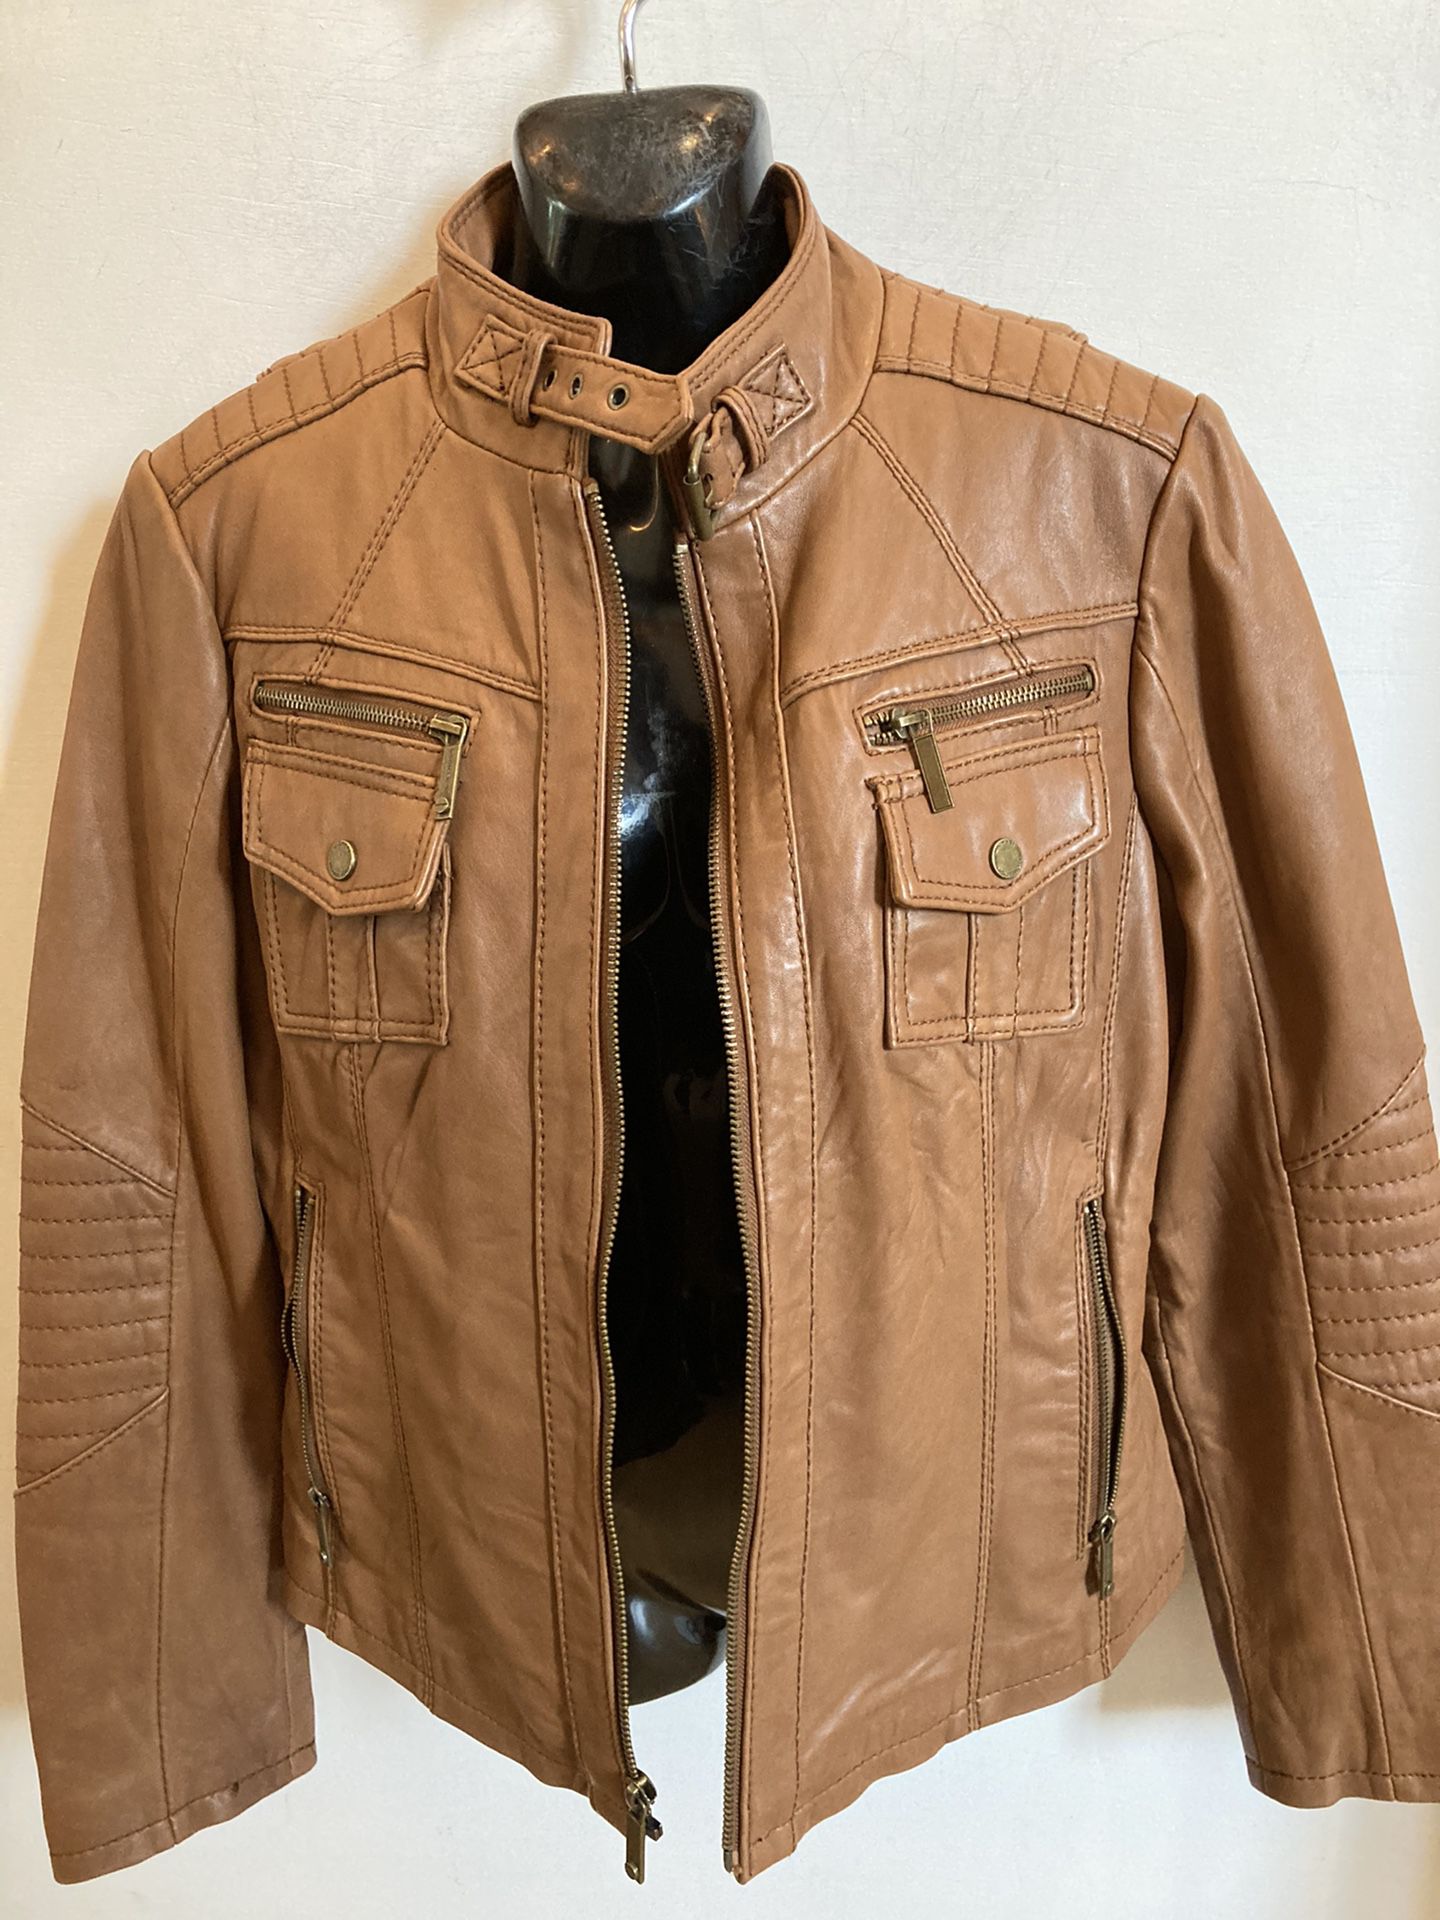 Michael Kors Leather Jacket, Size Large